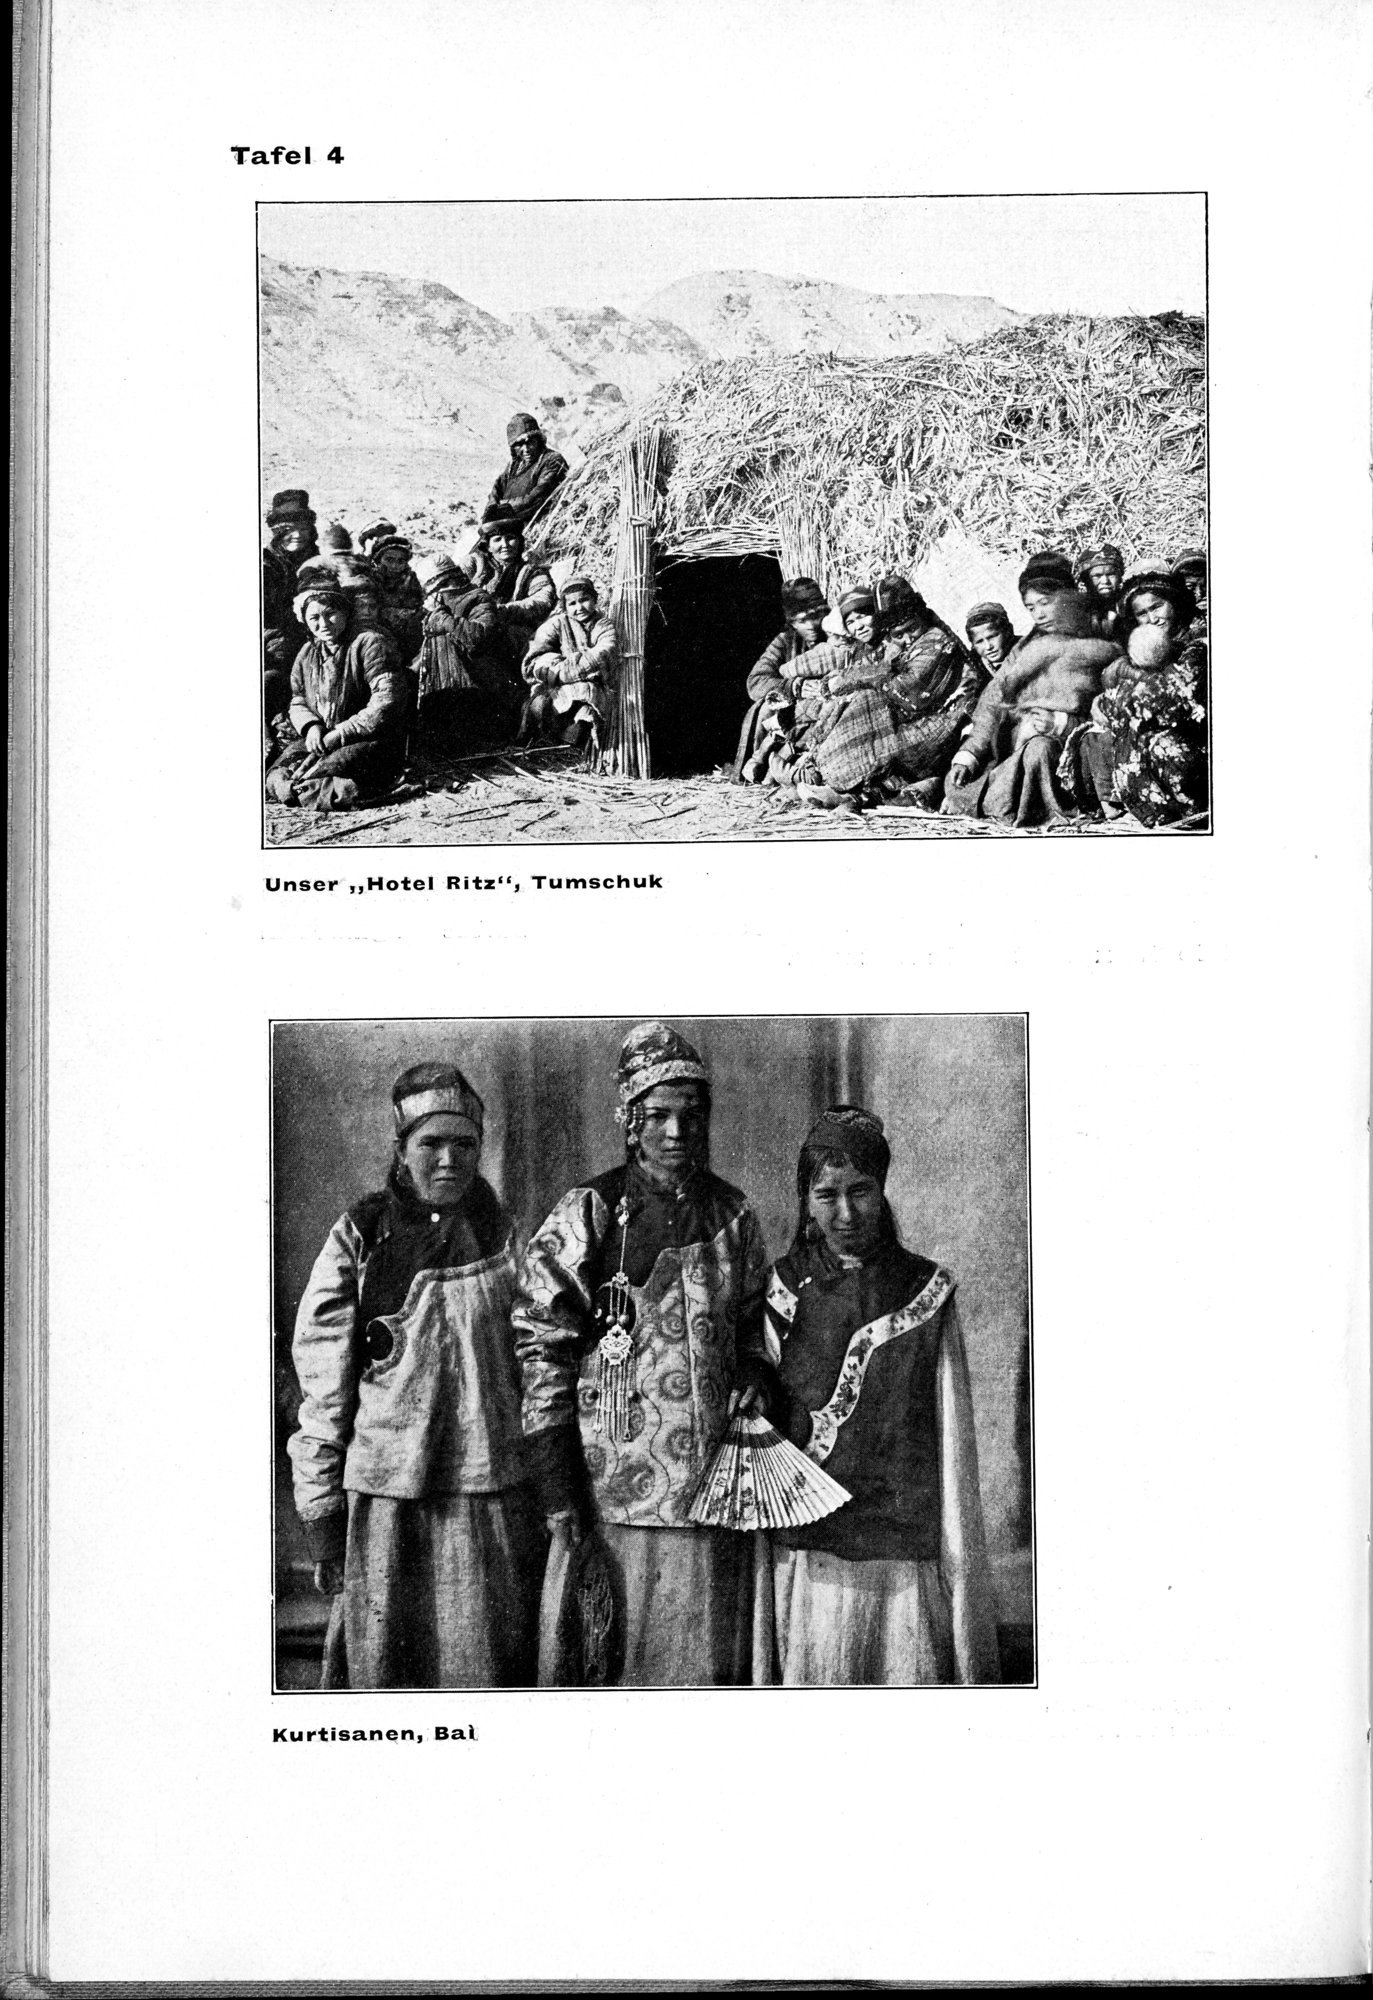 Von Land und Leuten in Ostturkistan : vol.1 / Page 24 (Grayscale High Resolution Image)